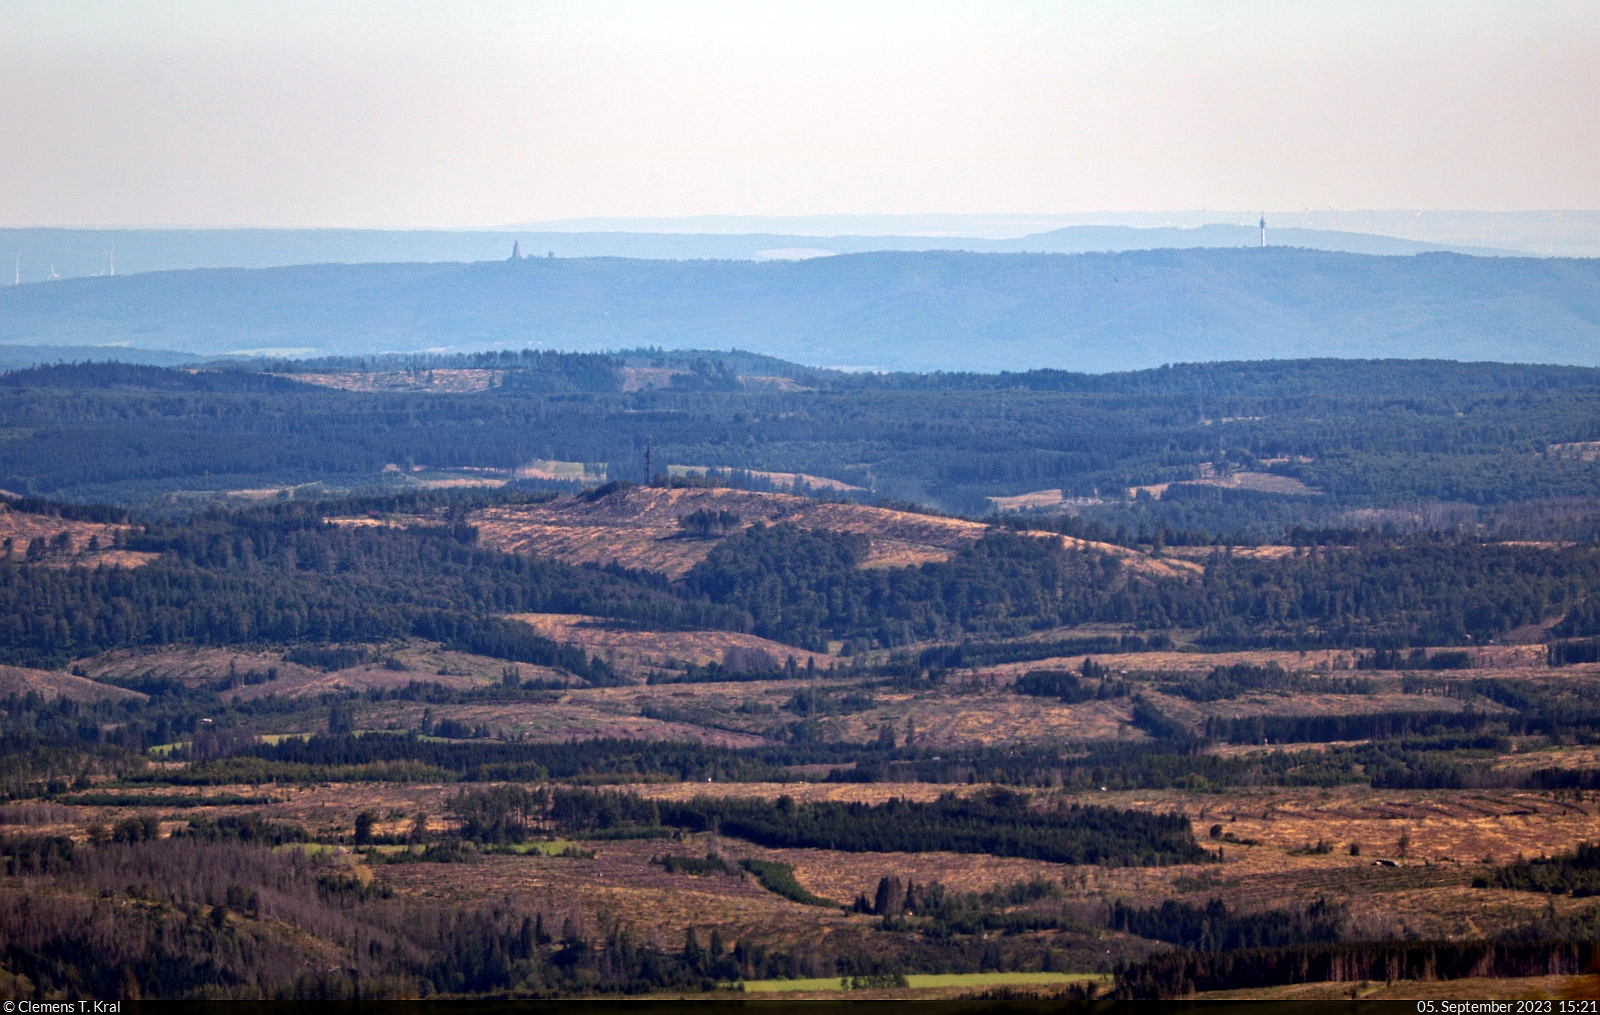 Südwestlicher Blick vom Brocken auf das 55 Kilometer entfernte Kyffhäuser-Denkmal (links) und den 94 Meter hohen Fernmeldeturm Kulpenberg.

🕓 5.9.2023 | 15:21 Uhr